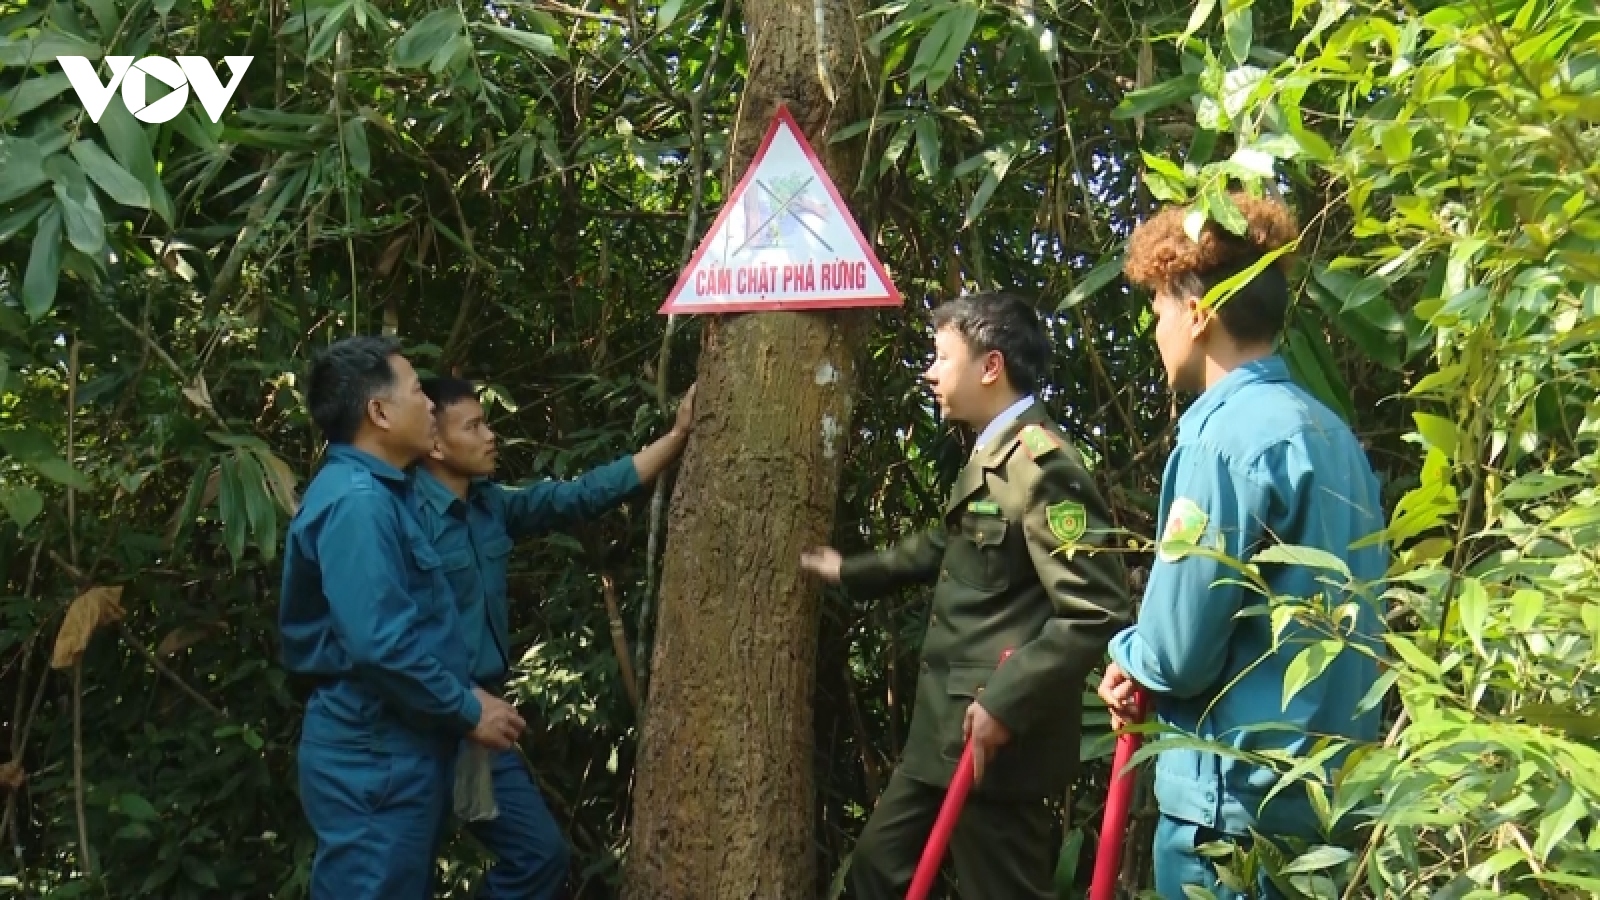 Thêm động lực để người dân gìn giữ và phát triển rừng